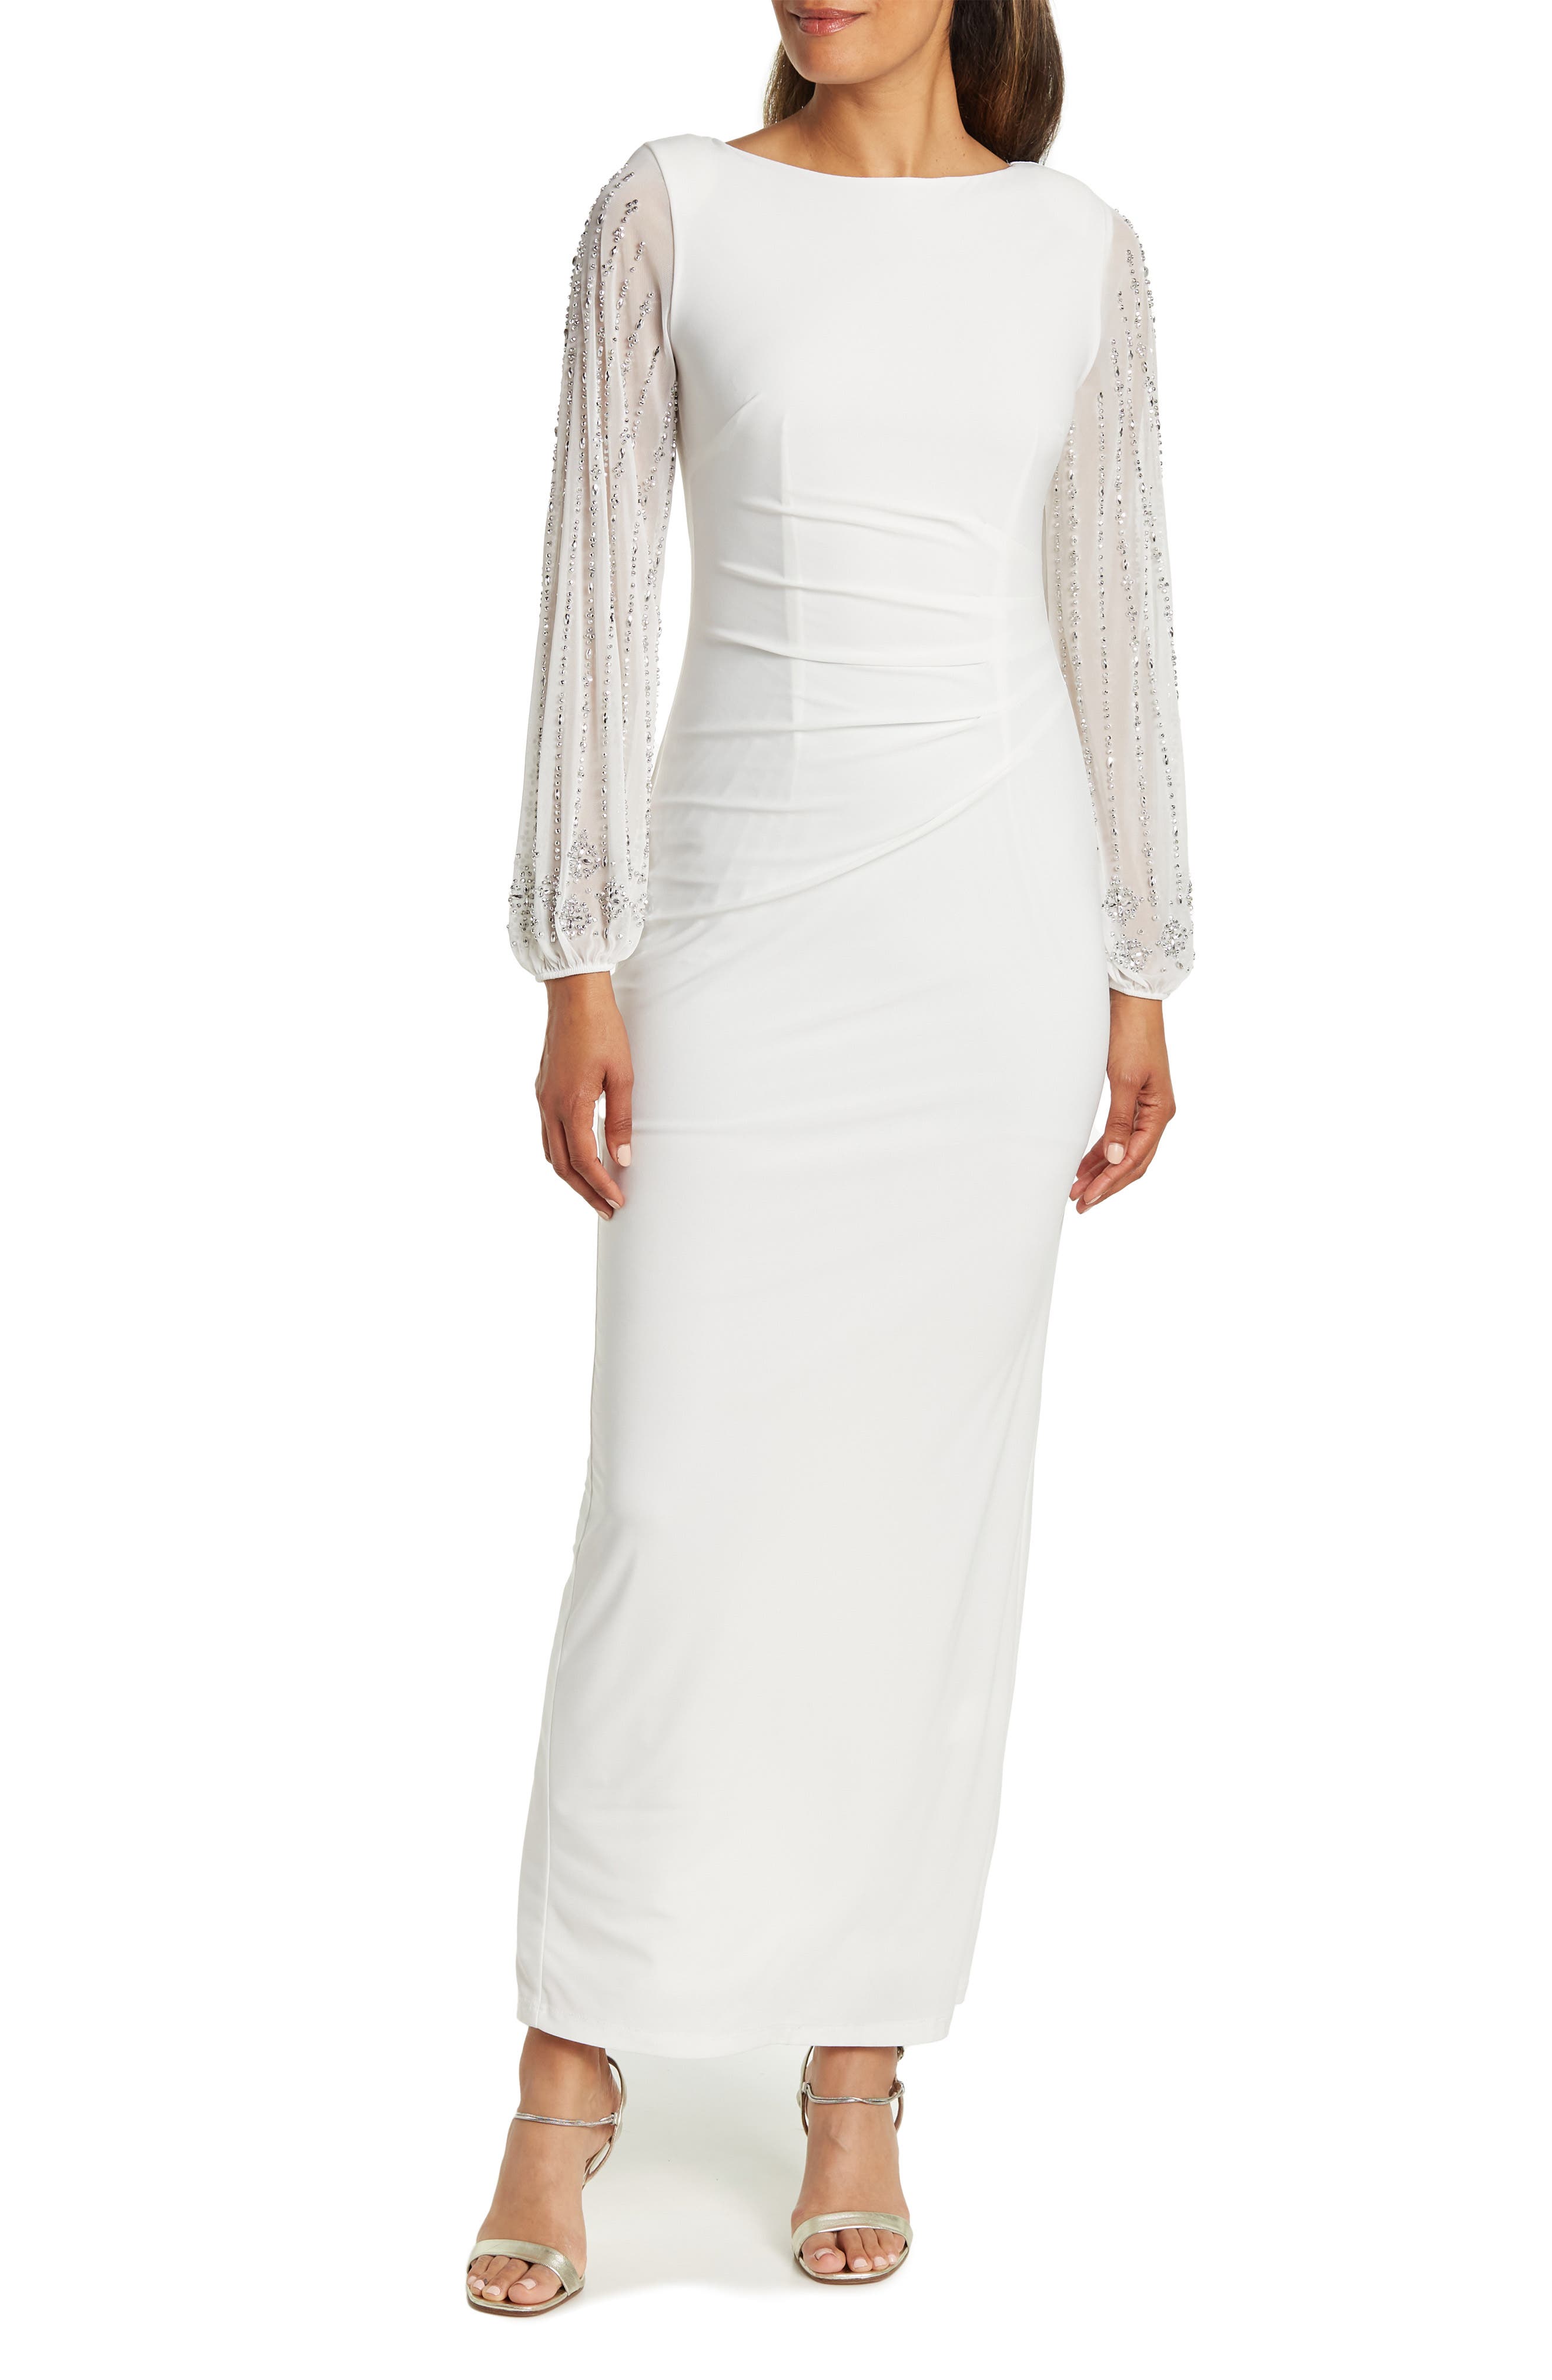 White Long Sleeve Dresses for Women ...